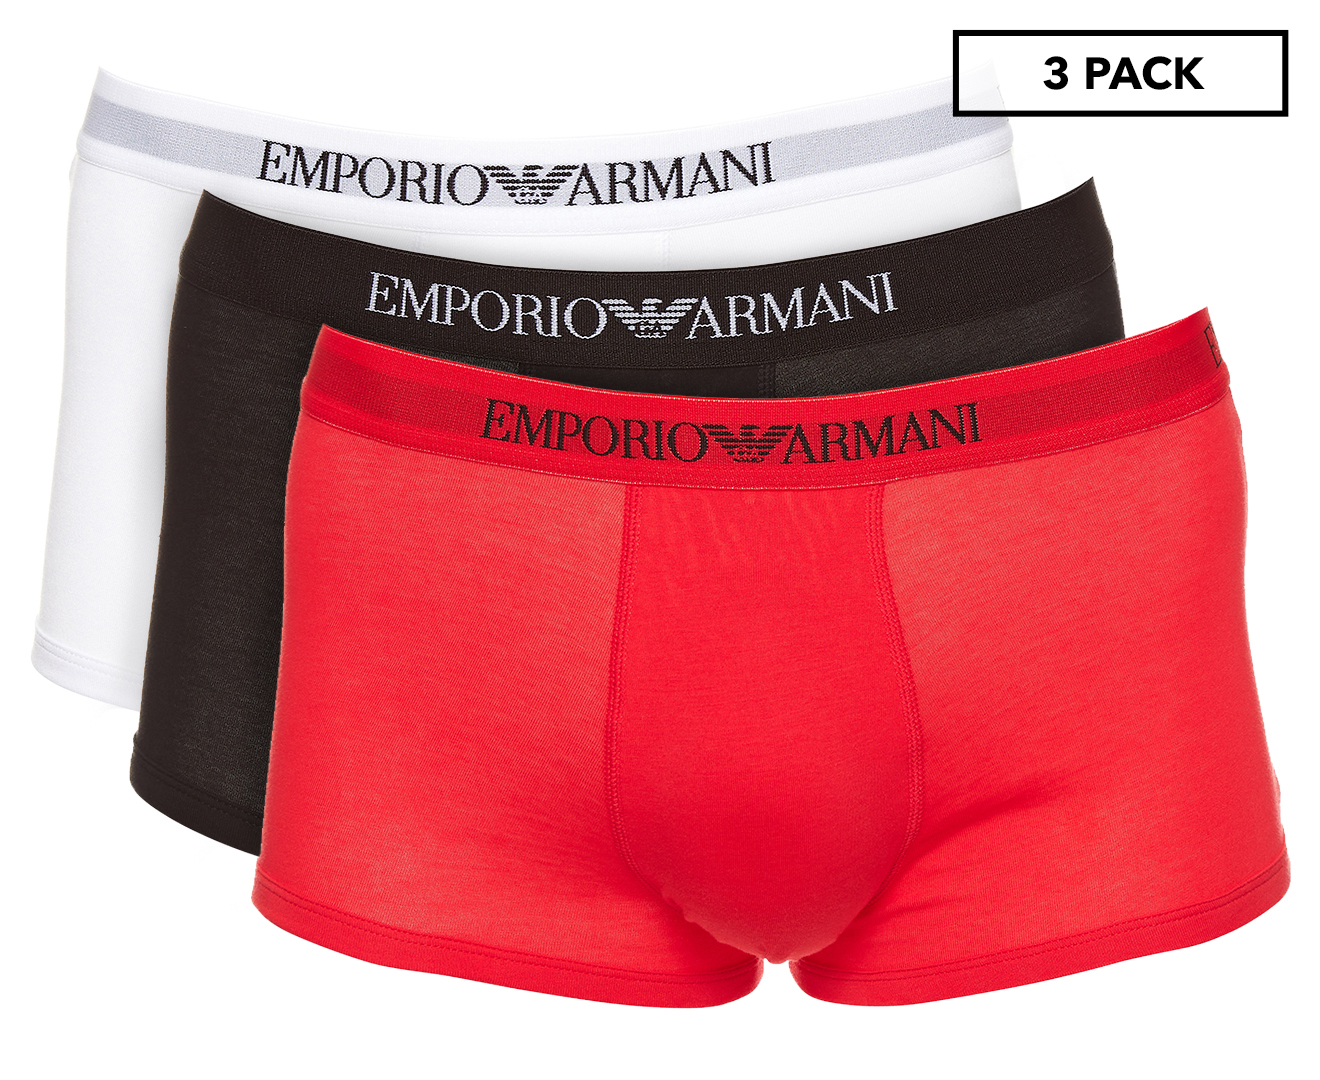 Emporio Armani Men's Pure Cotton Trunks 3-Pack - White/Red/Black |  